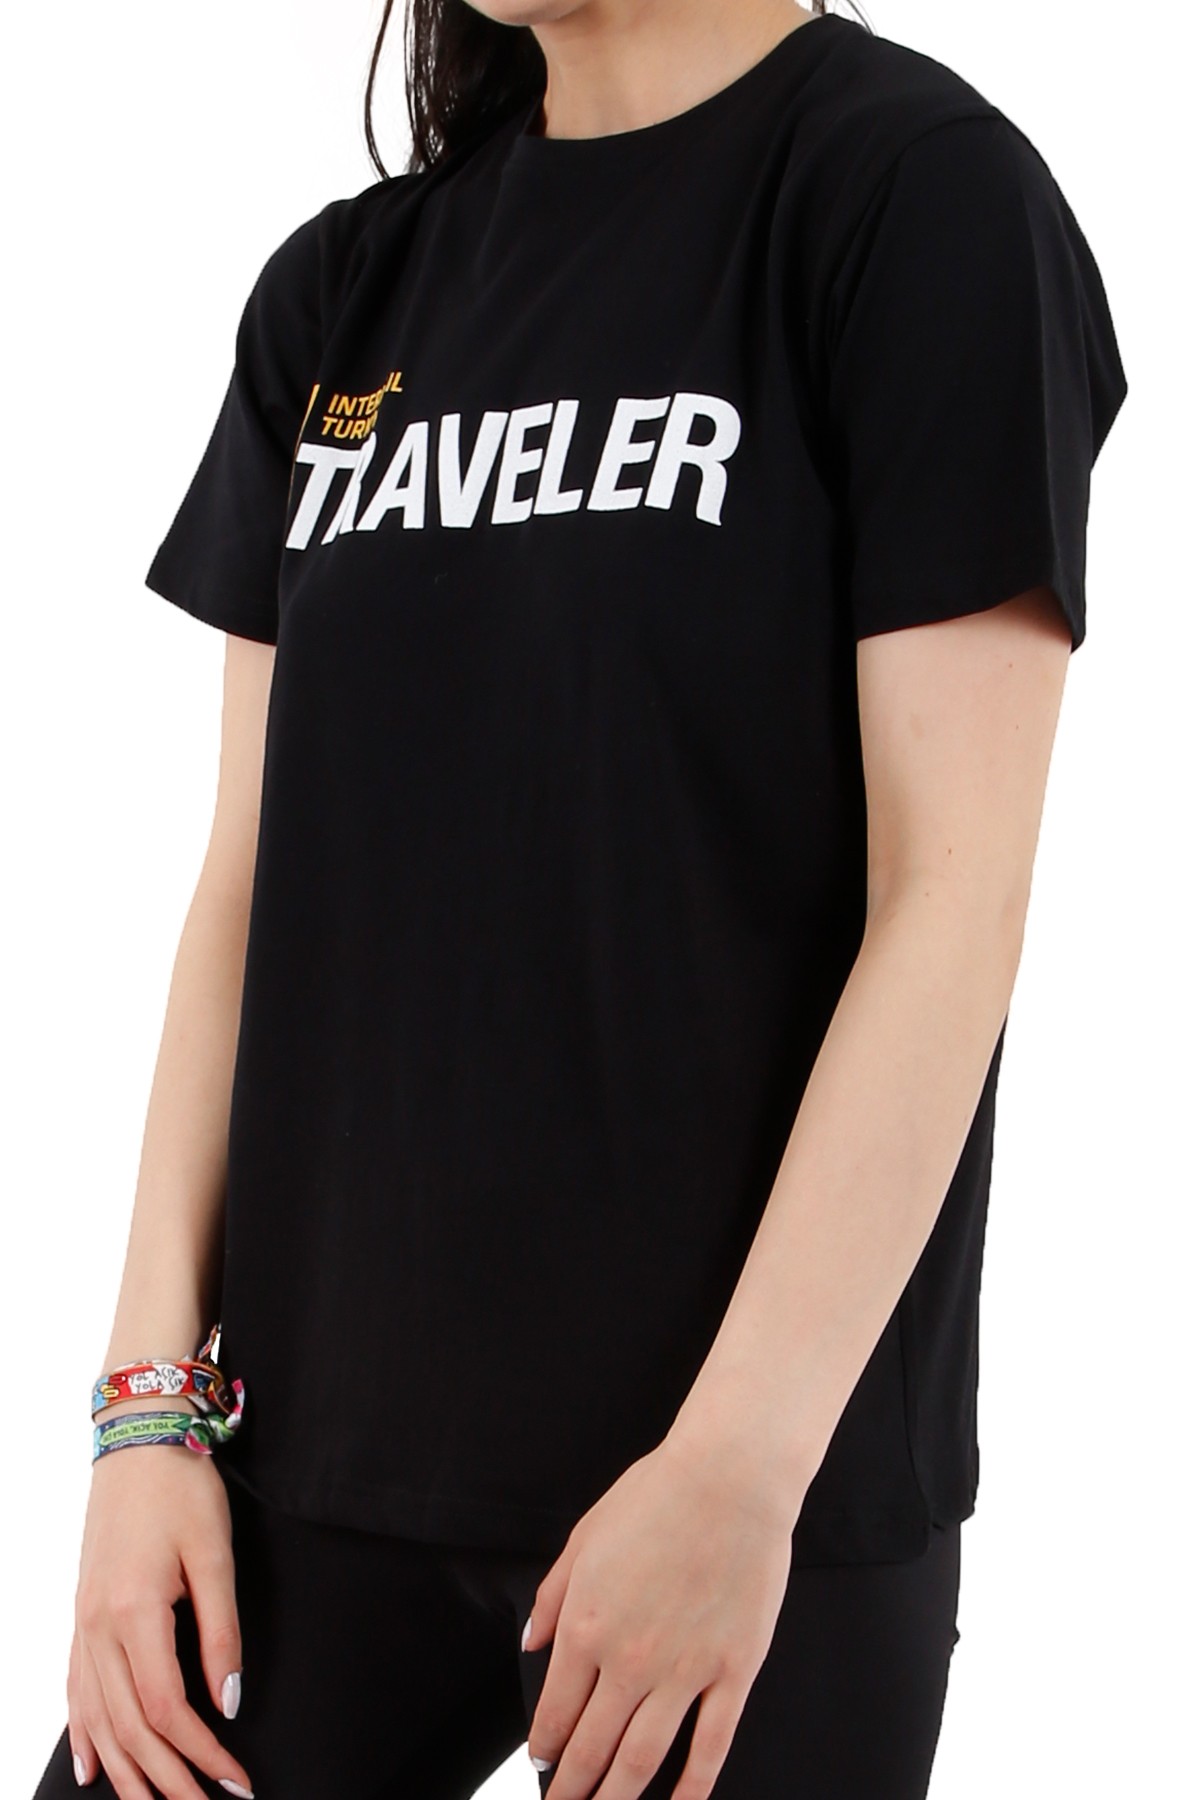 Interrail Türkiye "TRAVELER" Özel Tasarım T-shirt / Siyah